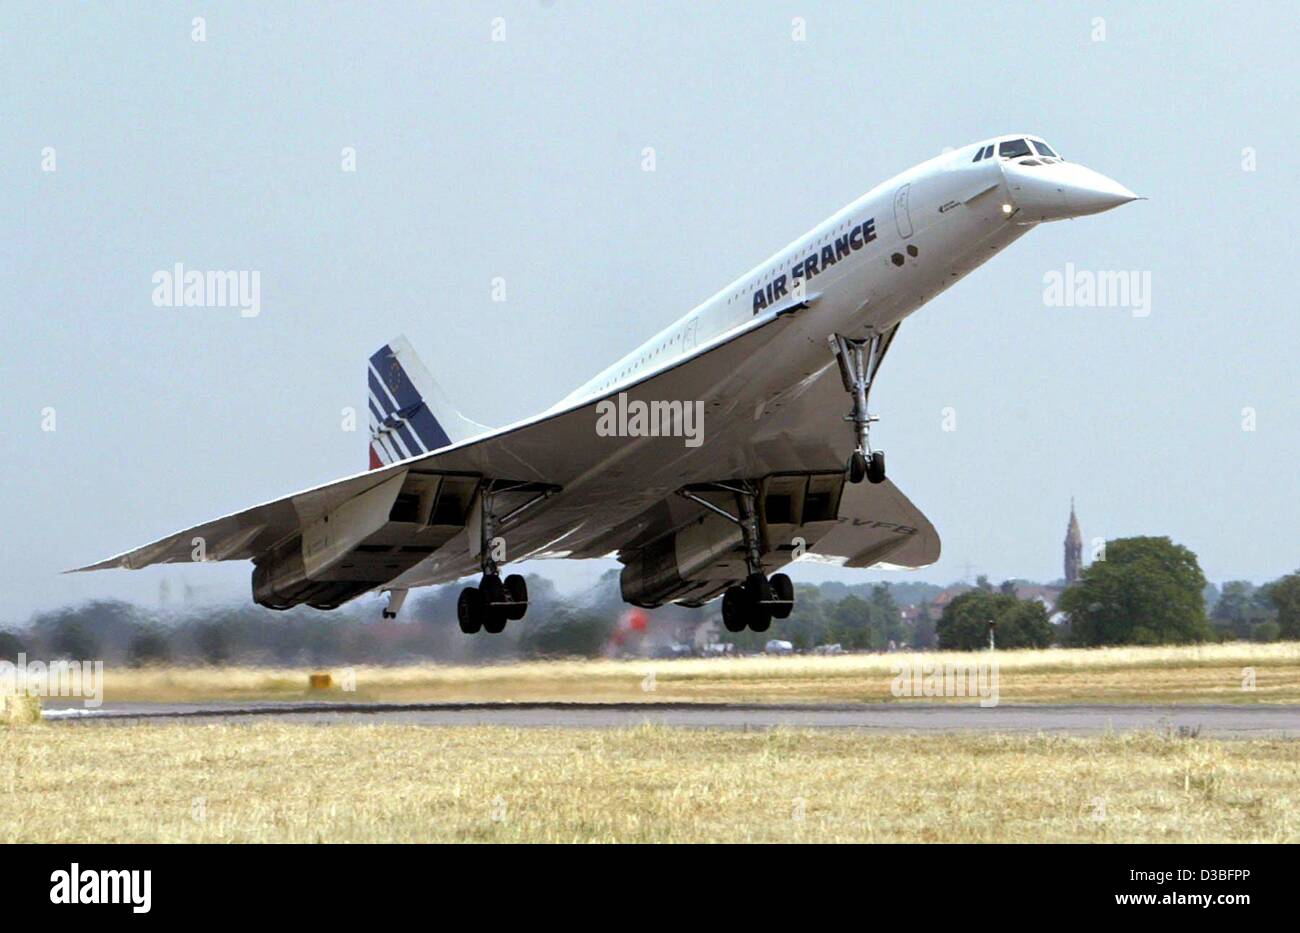 (Dpa) - L'ultimo volo di Air France Concorde aereo supersonico termina al Karlsruhe-Baden-Baden aeroporto in Soellingen-Rheinmuenster, Germania, 24 giugno 2003. Il piano, prese fuori servizio da parte di Air France, saranno trasportati in un permament mostra presso il Museo della Tecnica a Sinsheim, vicino a Foto Stock